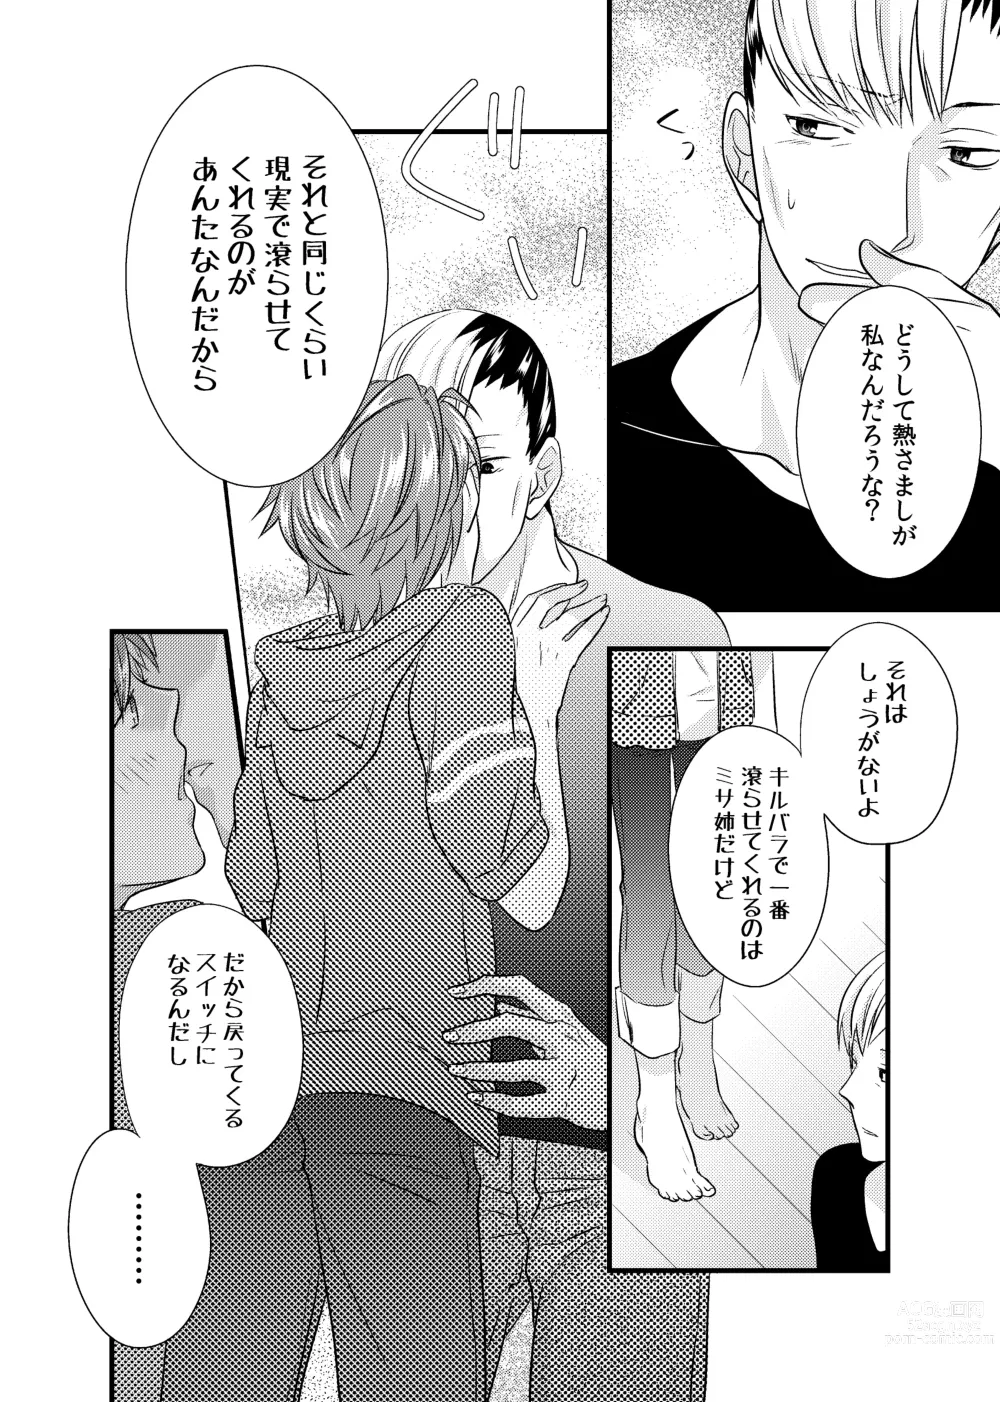 Page 9 of doujinshi sonna konnano futarigoto